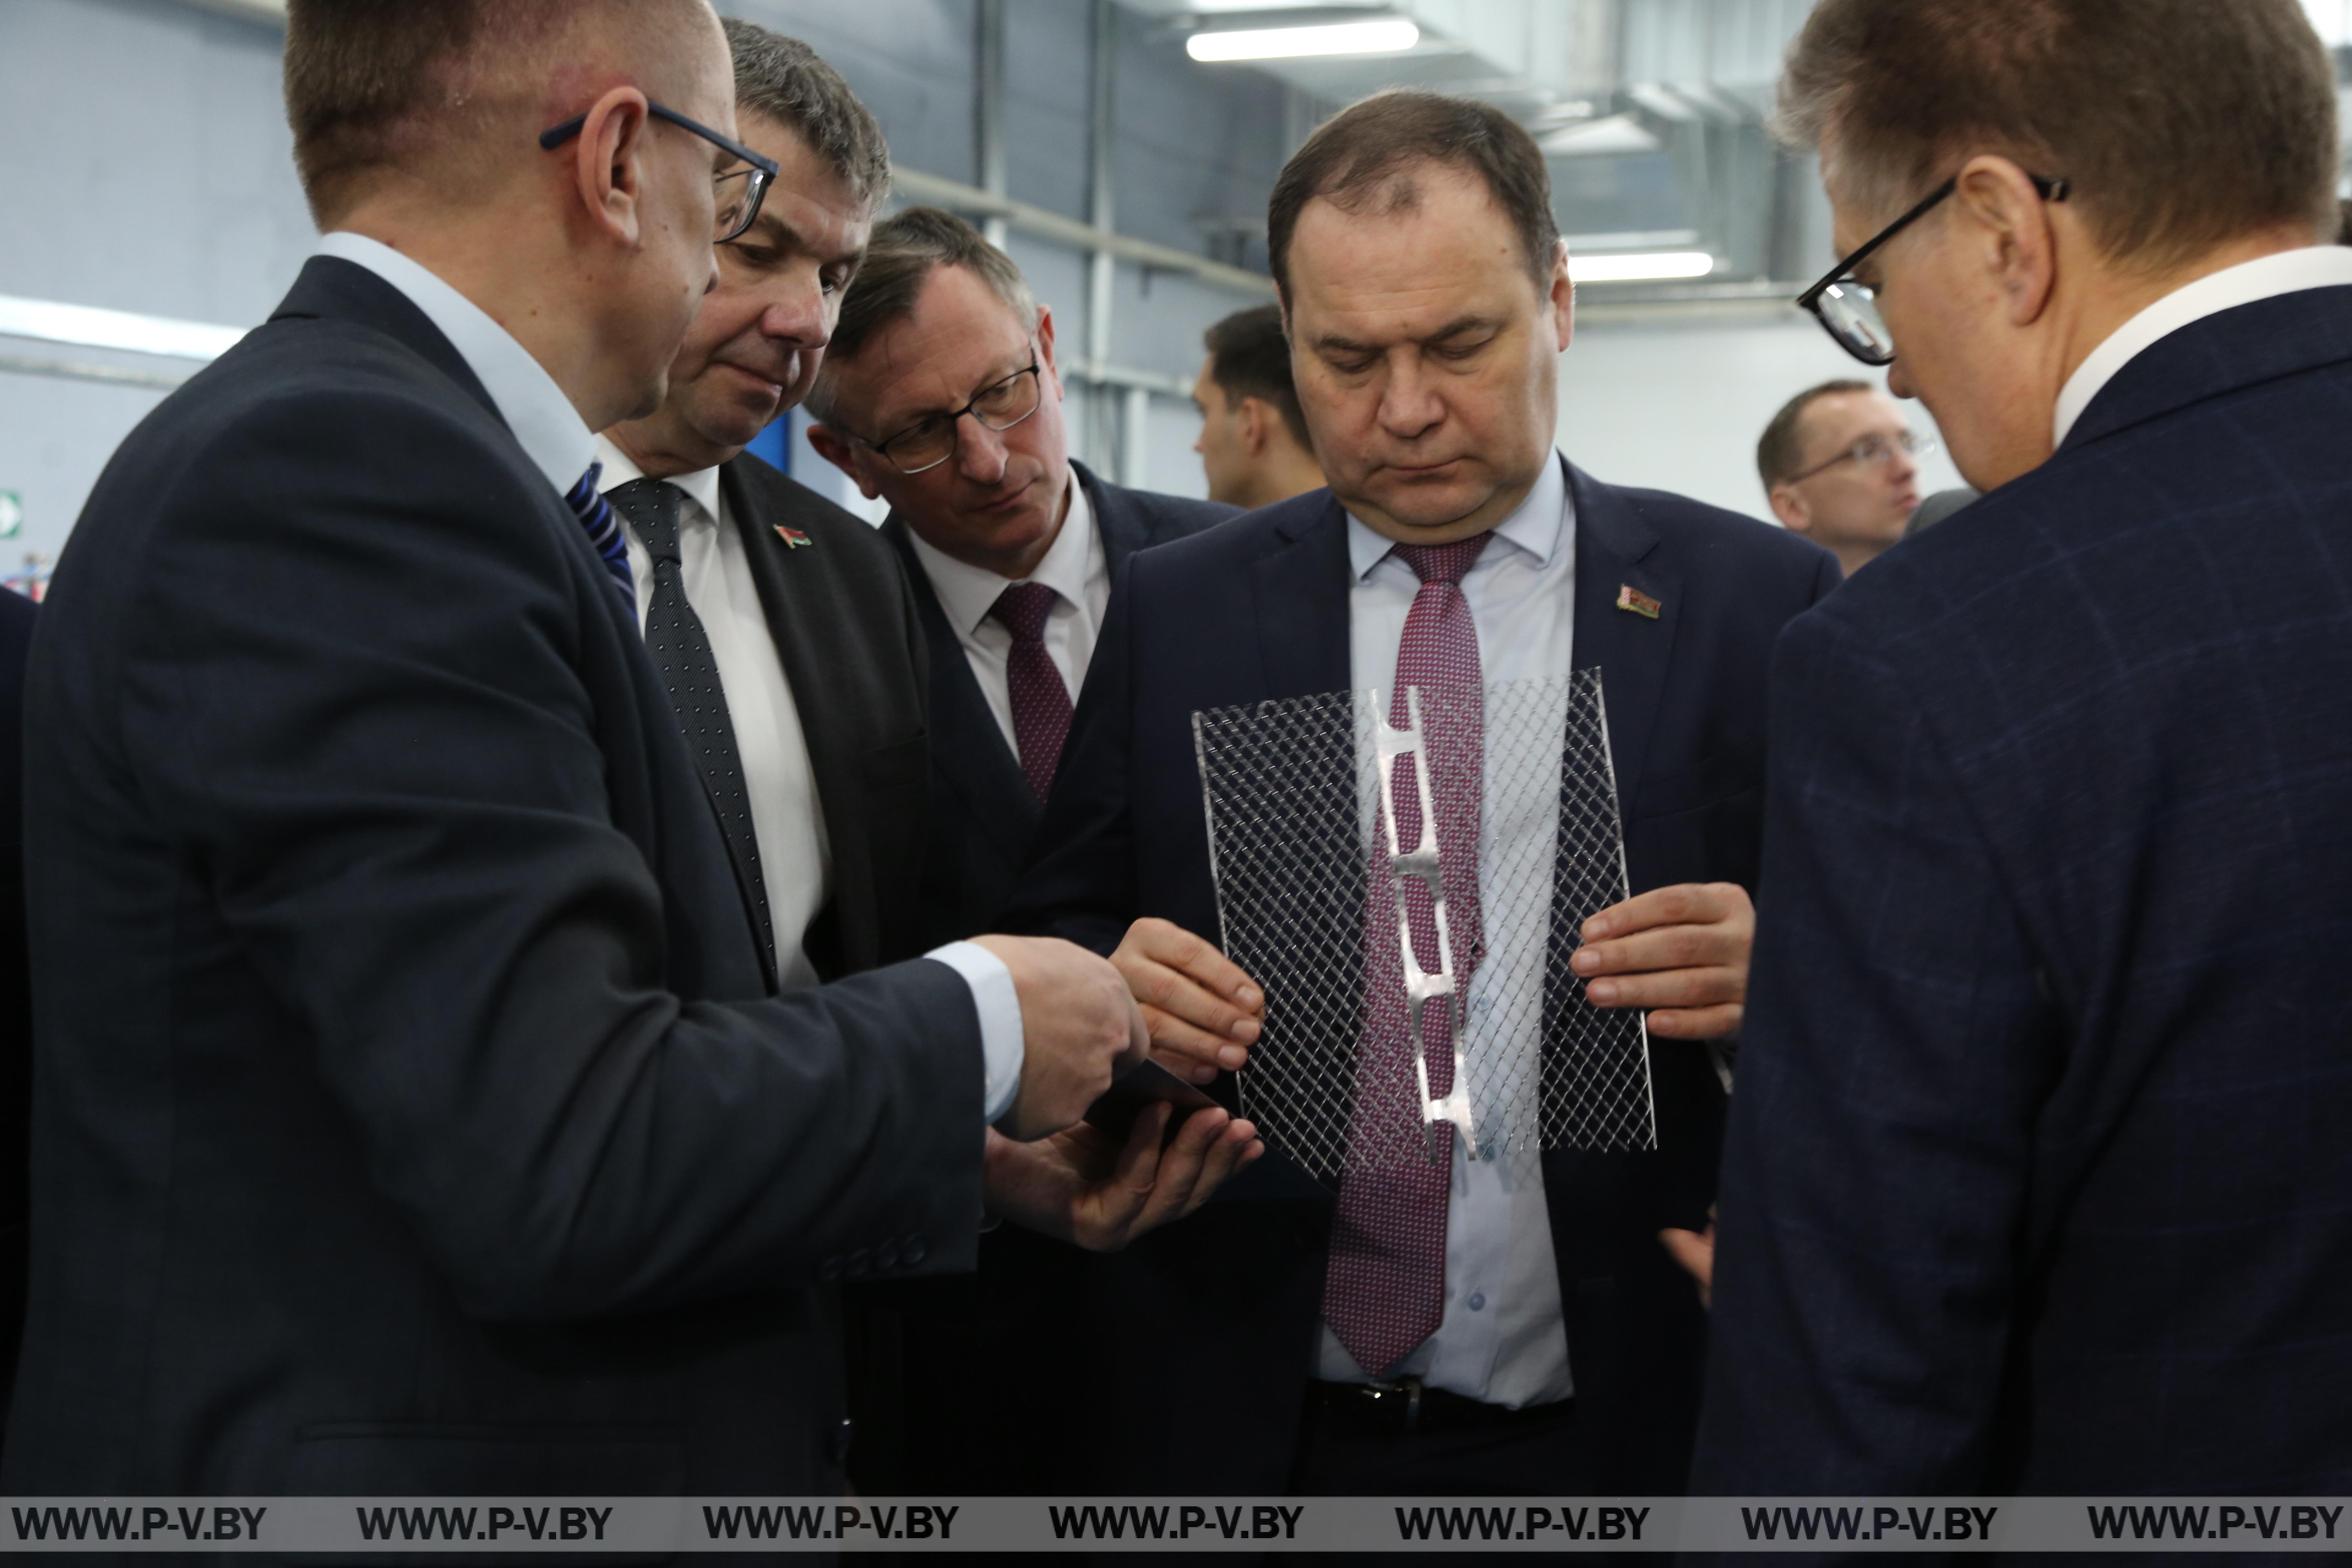 Инвестиционная активность – в центре внимания Премьер-министра в ходе рабочей поездки в Пинск